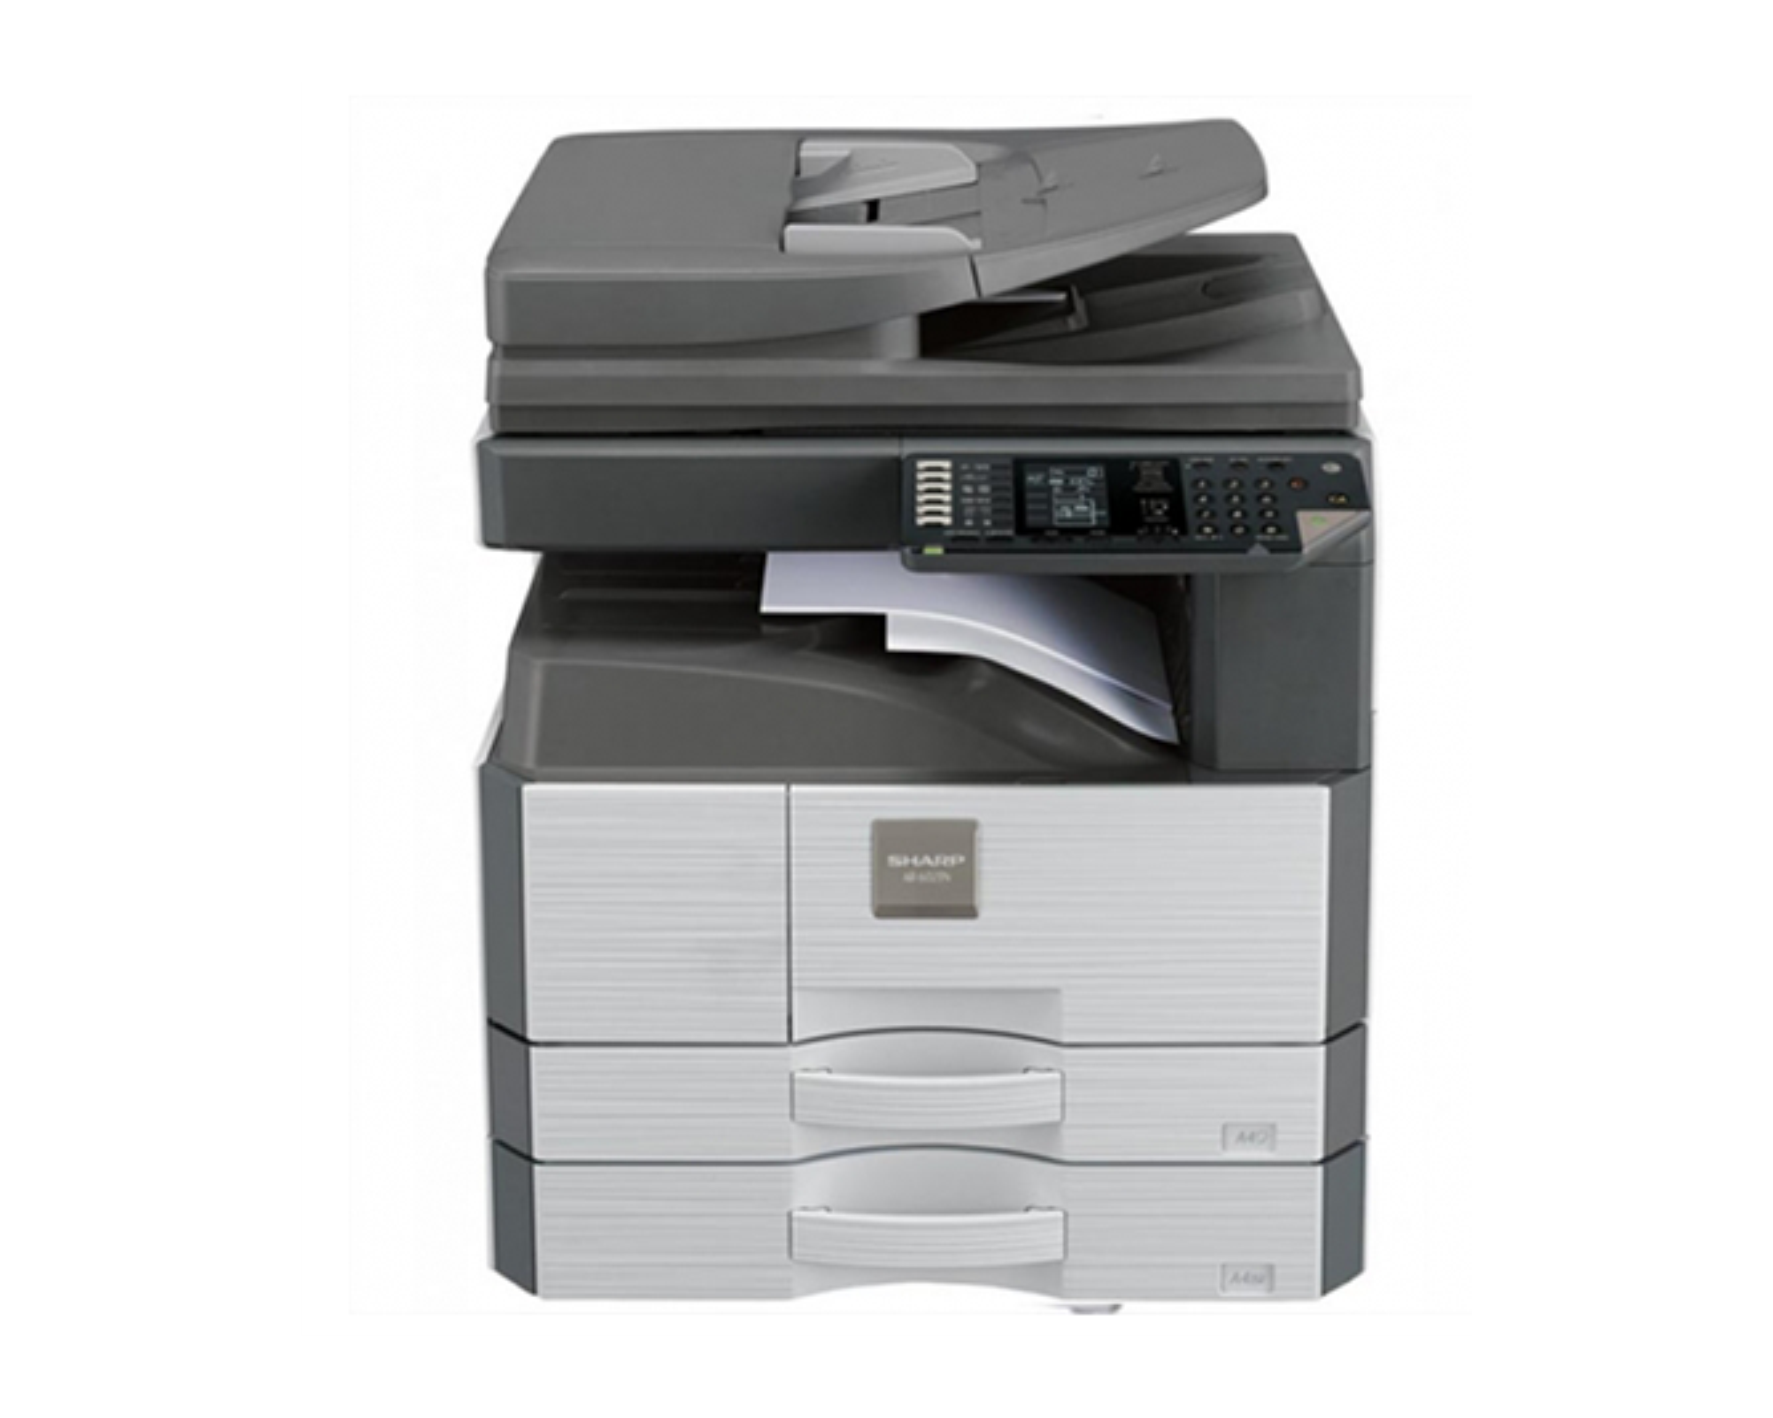 Máy photocopy Sharp AR-6026NV